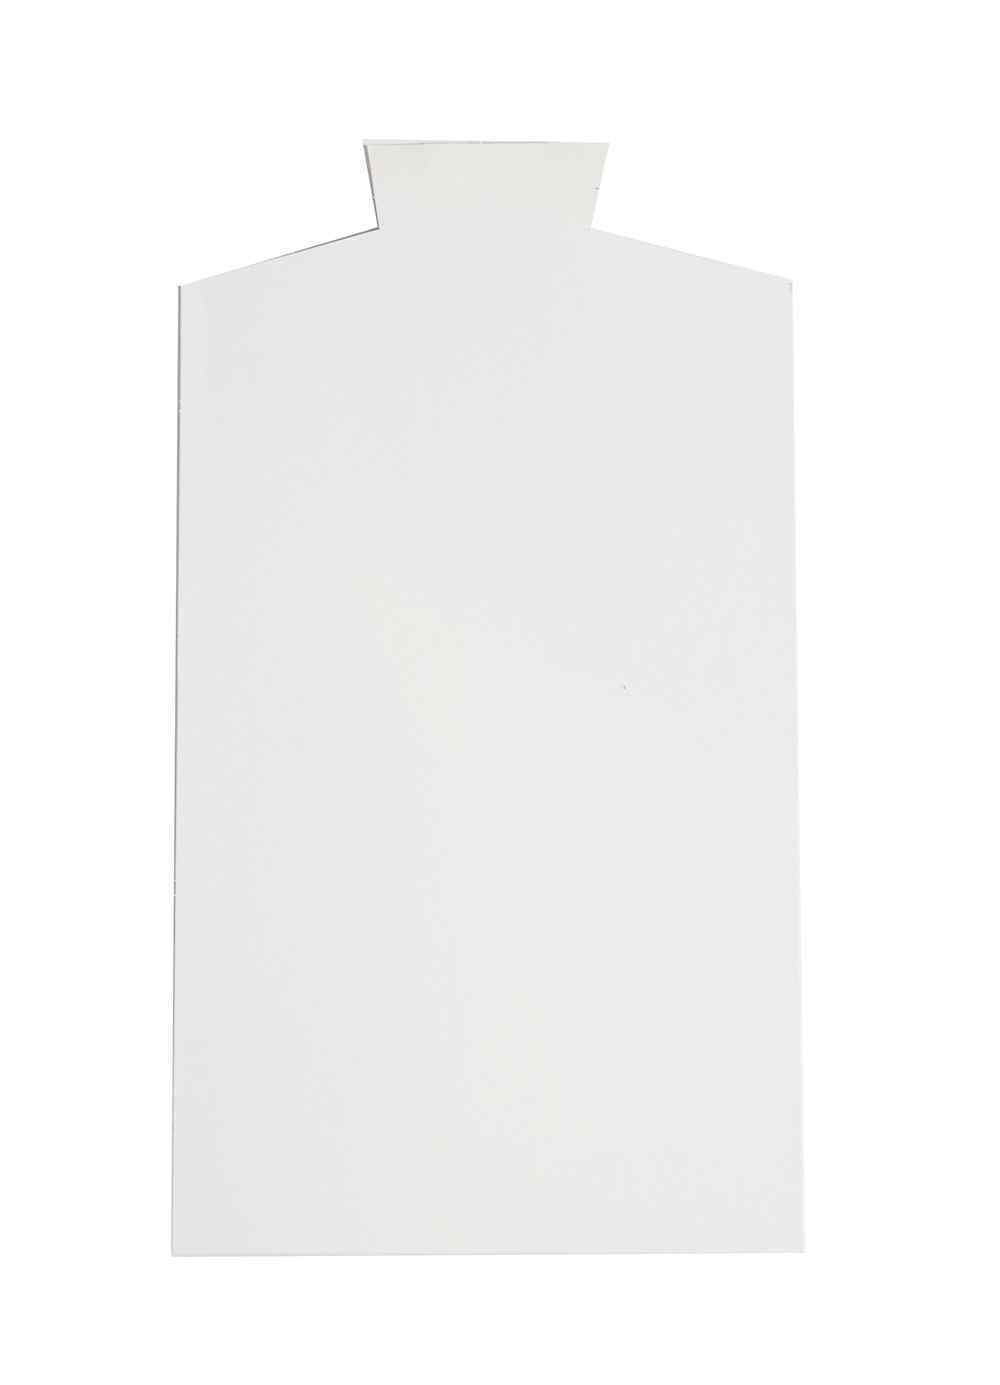 Shirt Board - Shaped WIDE  9.5" x 15.5" (250)